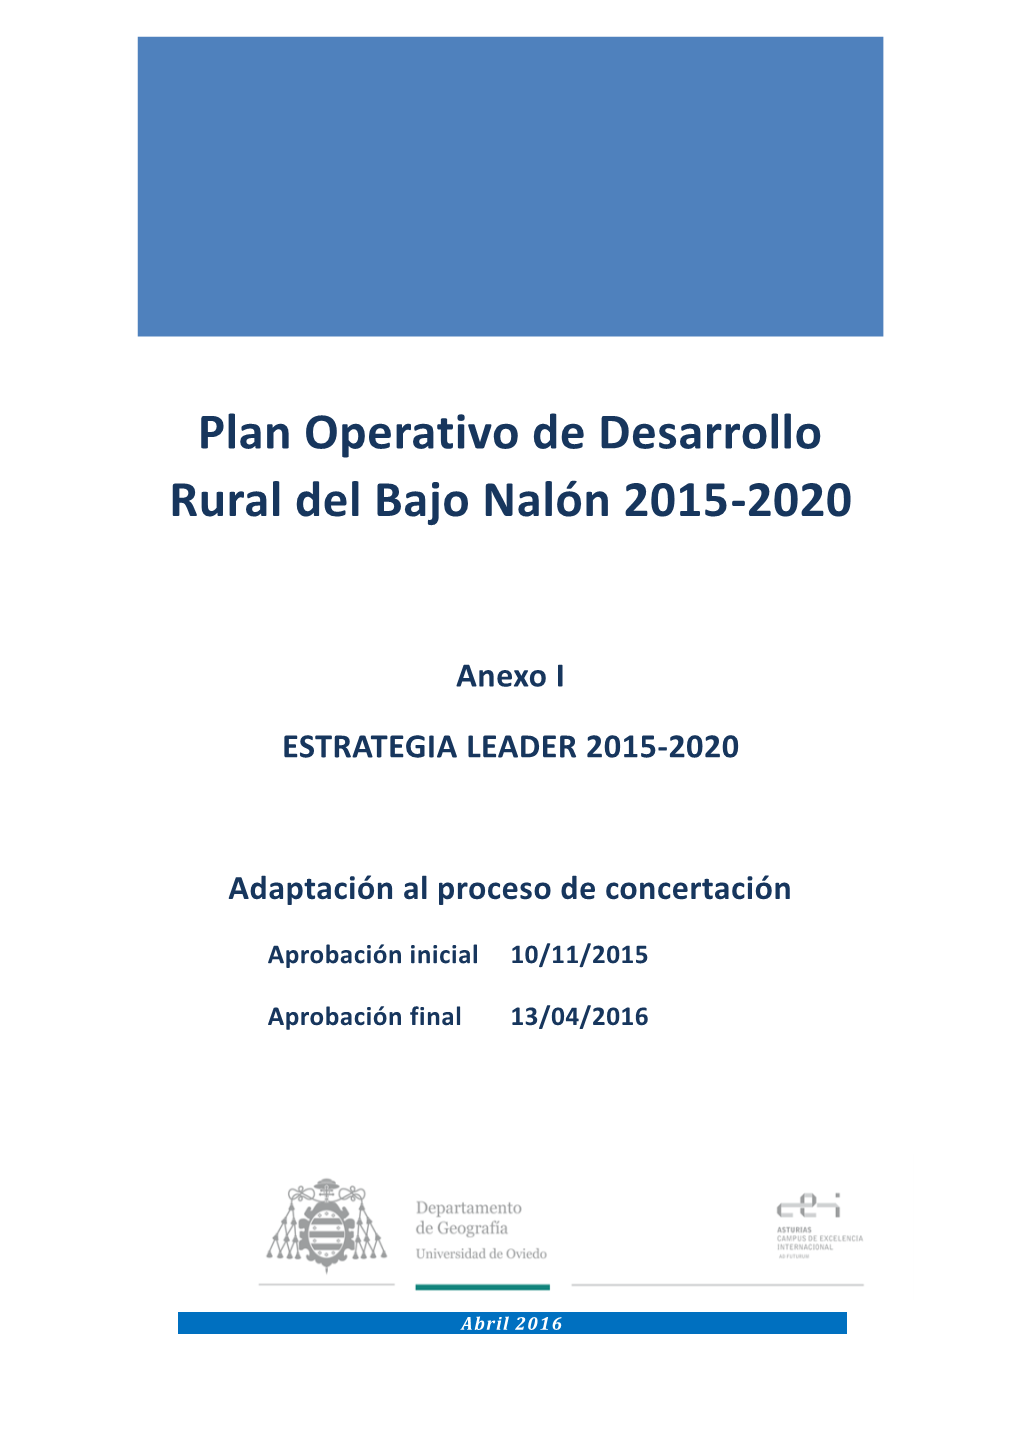 Plan Operativo De Desarrollo Rural Del Bajo Nalón 2015-2020